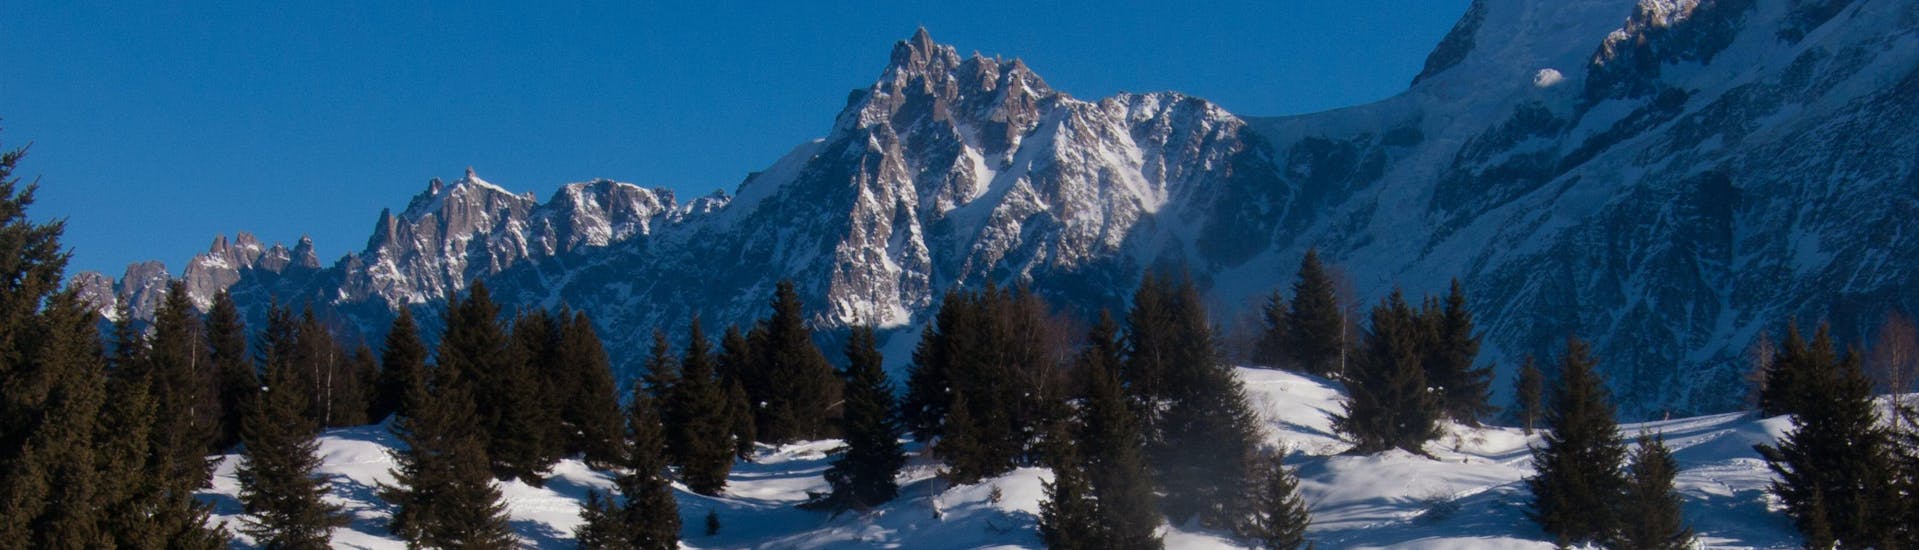 Vues panoramiques sur la verdure et les montagnes enneigées de Vallorcine où les écoles de ski donnent des cours de ski.